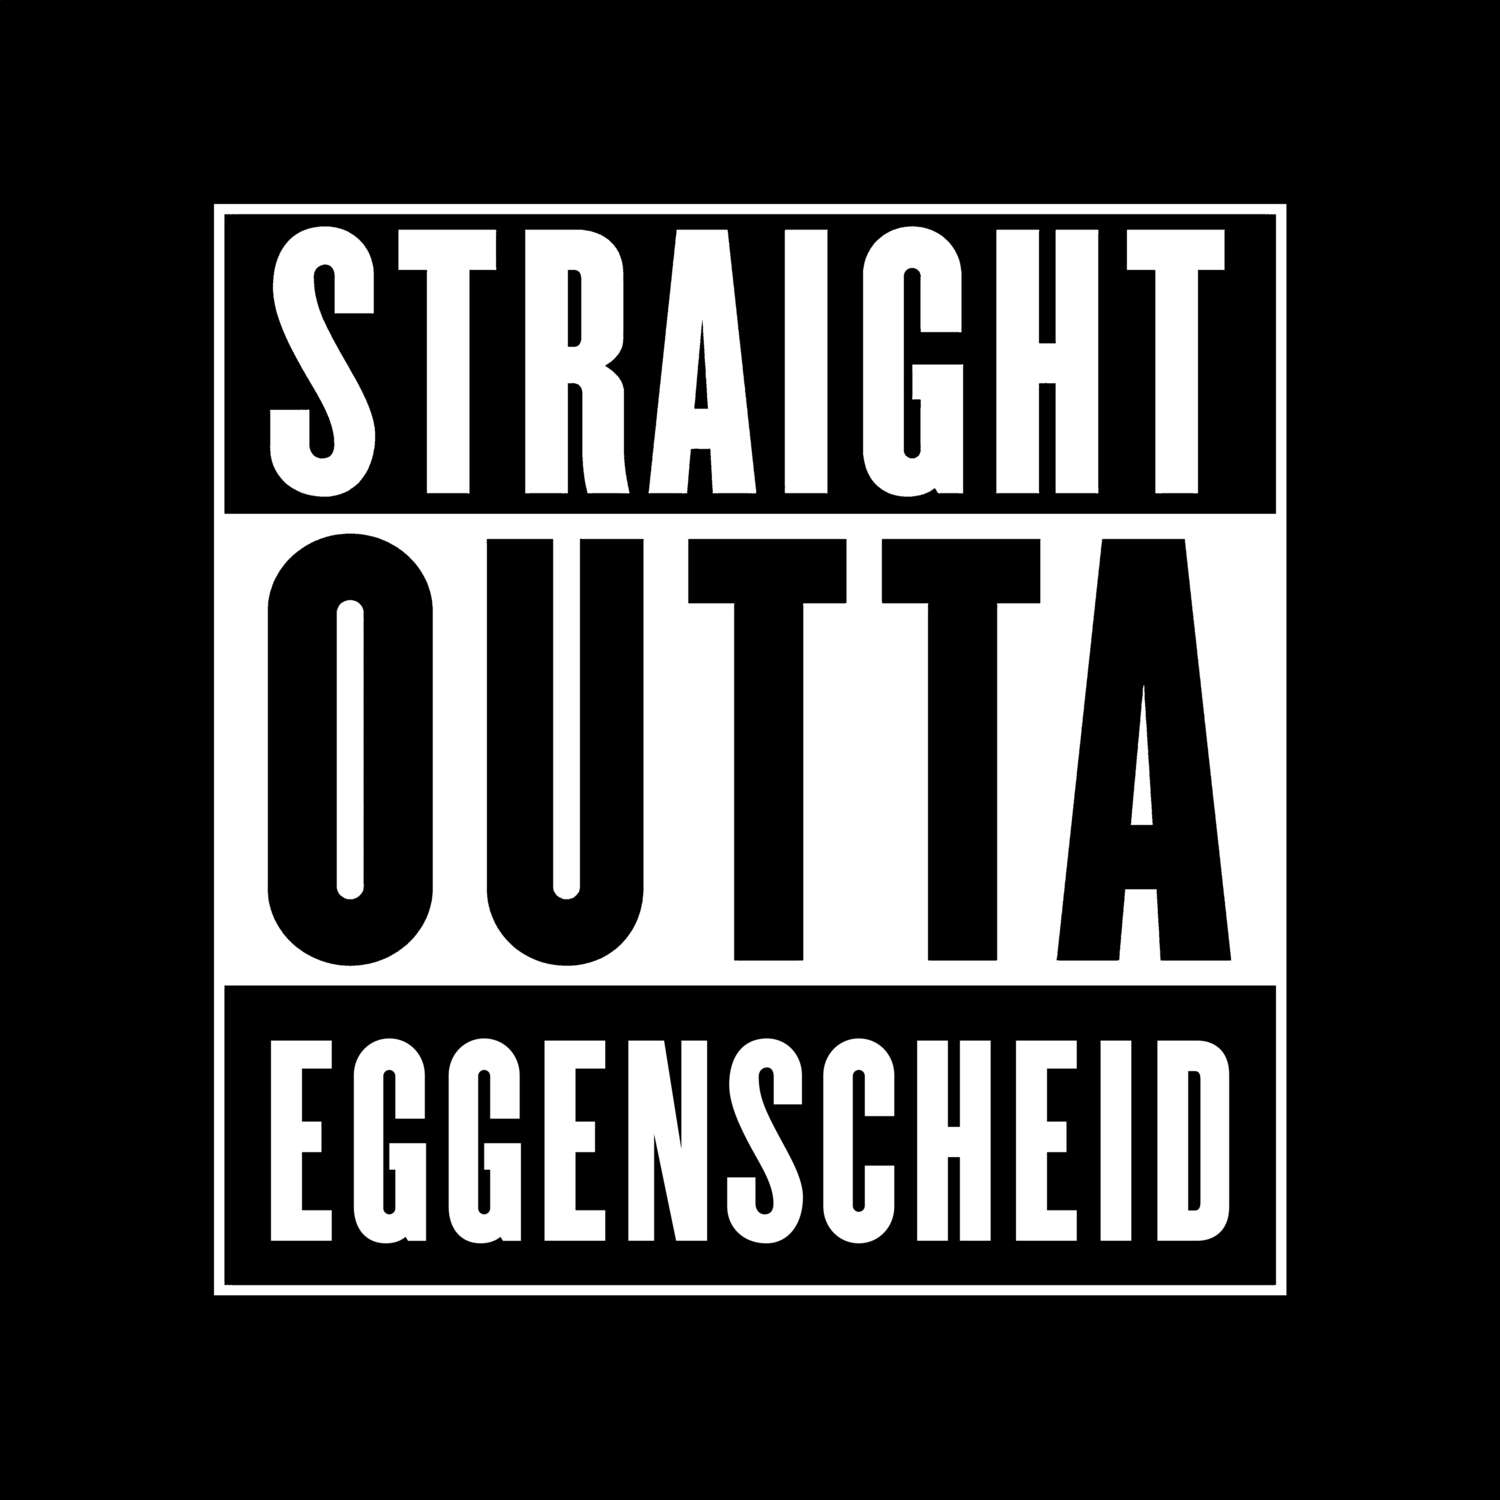 Eggenscheid T-Shirt »Straight Outta«